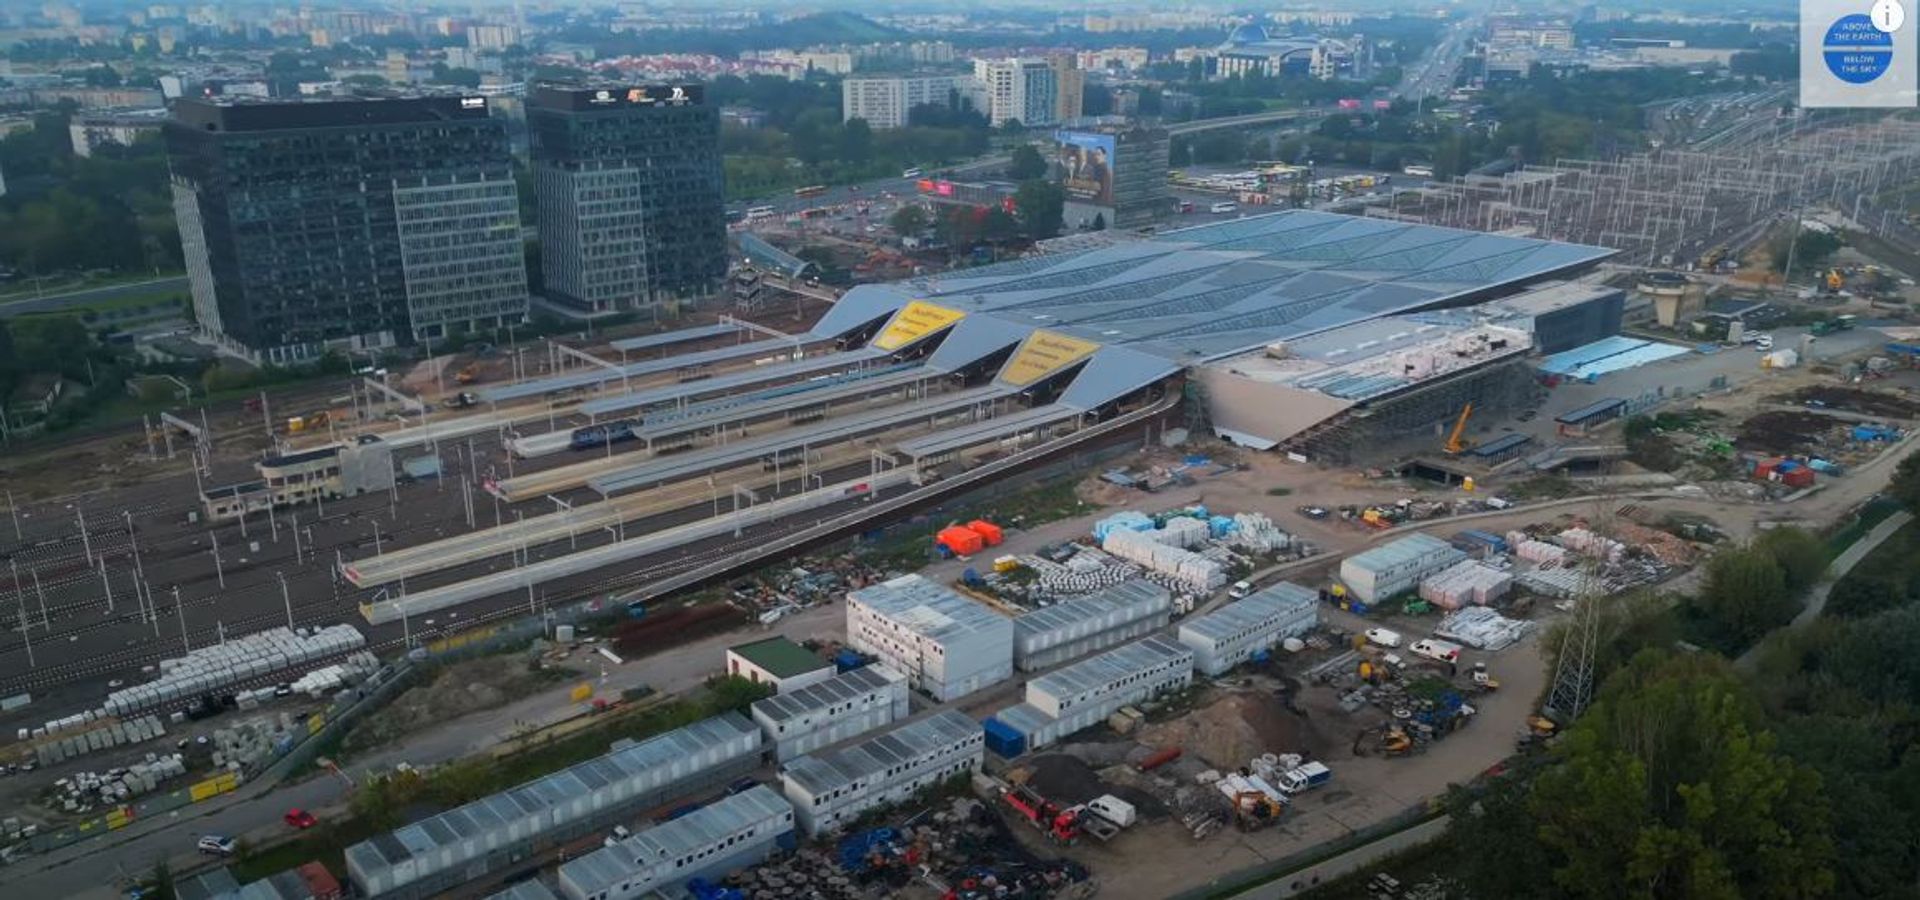 W Warszawie powstaje największy węzeł przesiadkowy w Polsce – nowy dworzec Warszawa Zachodnia 